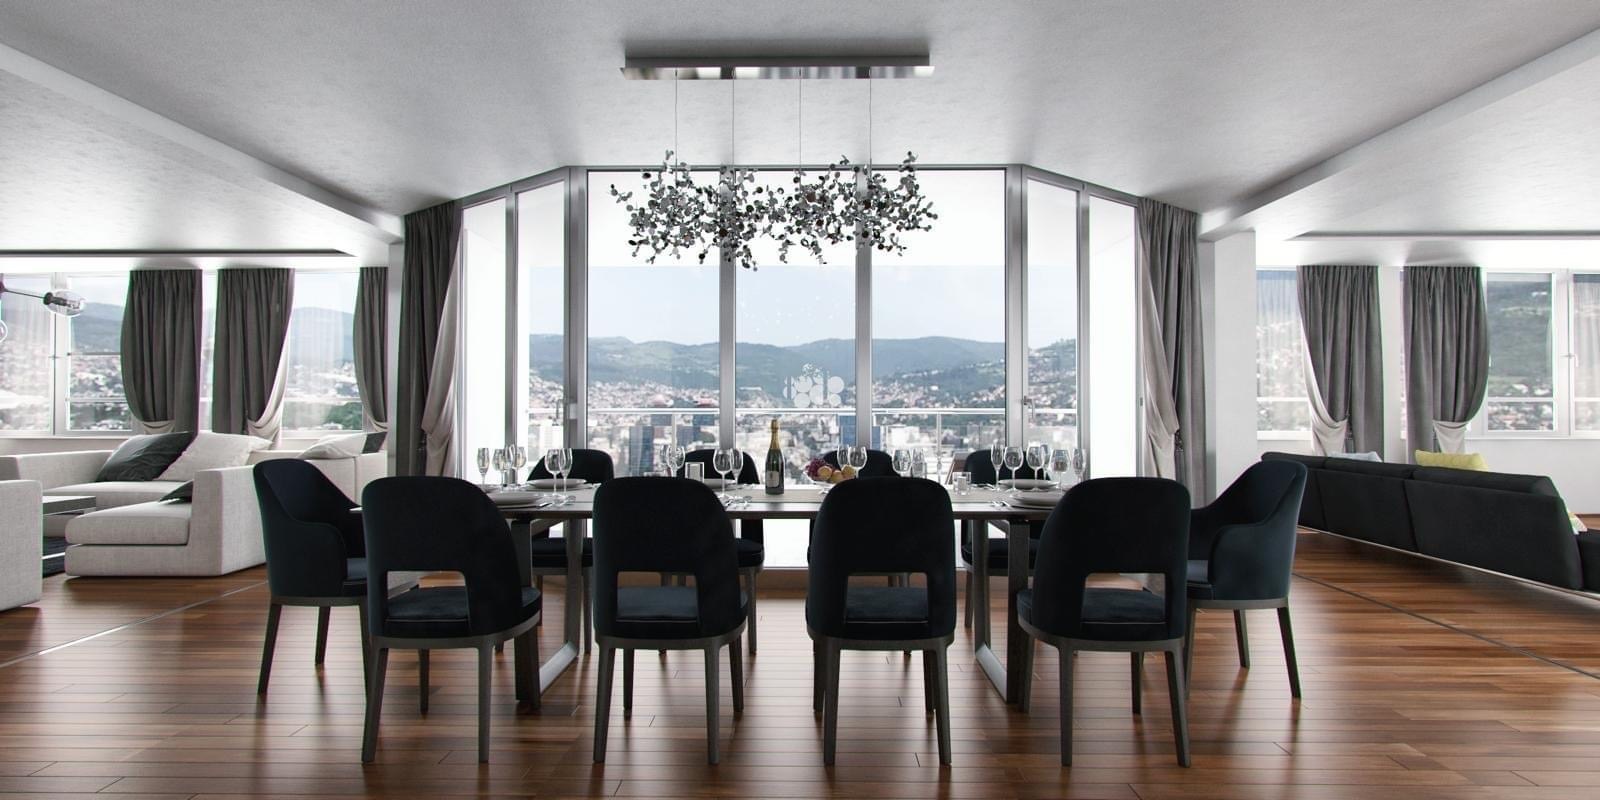 Bh. kompanija oprema penthouse od 2 miliona KM u Sarajevo Toweru